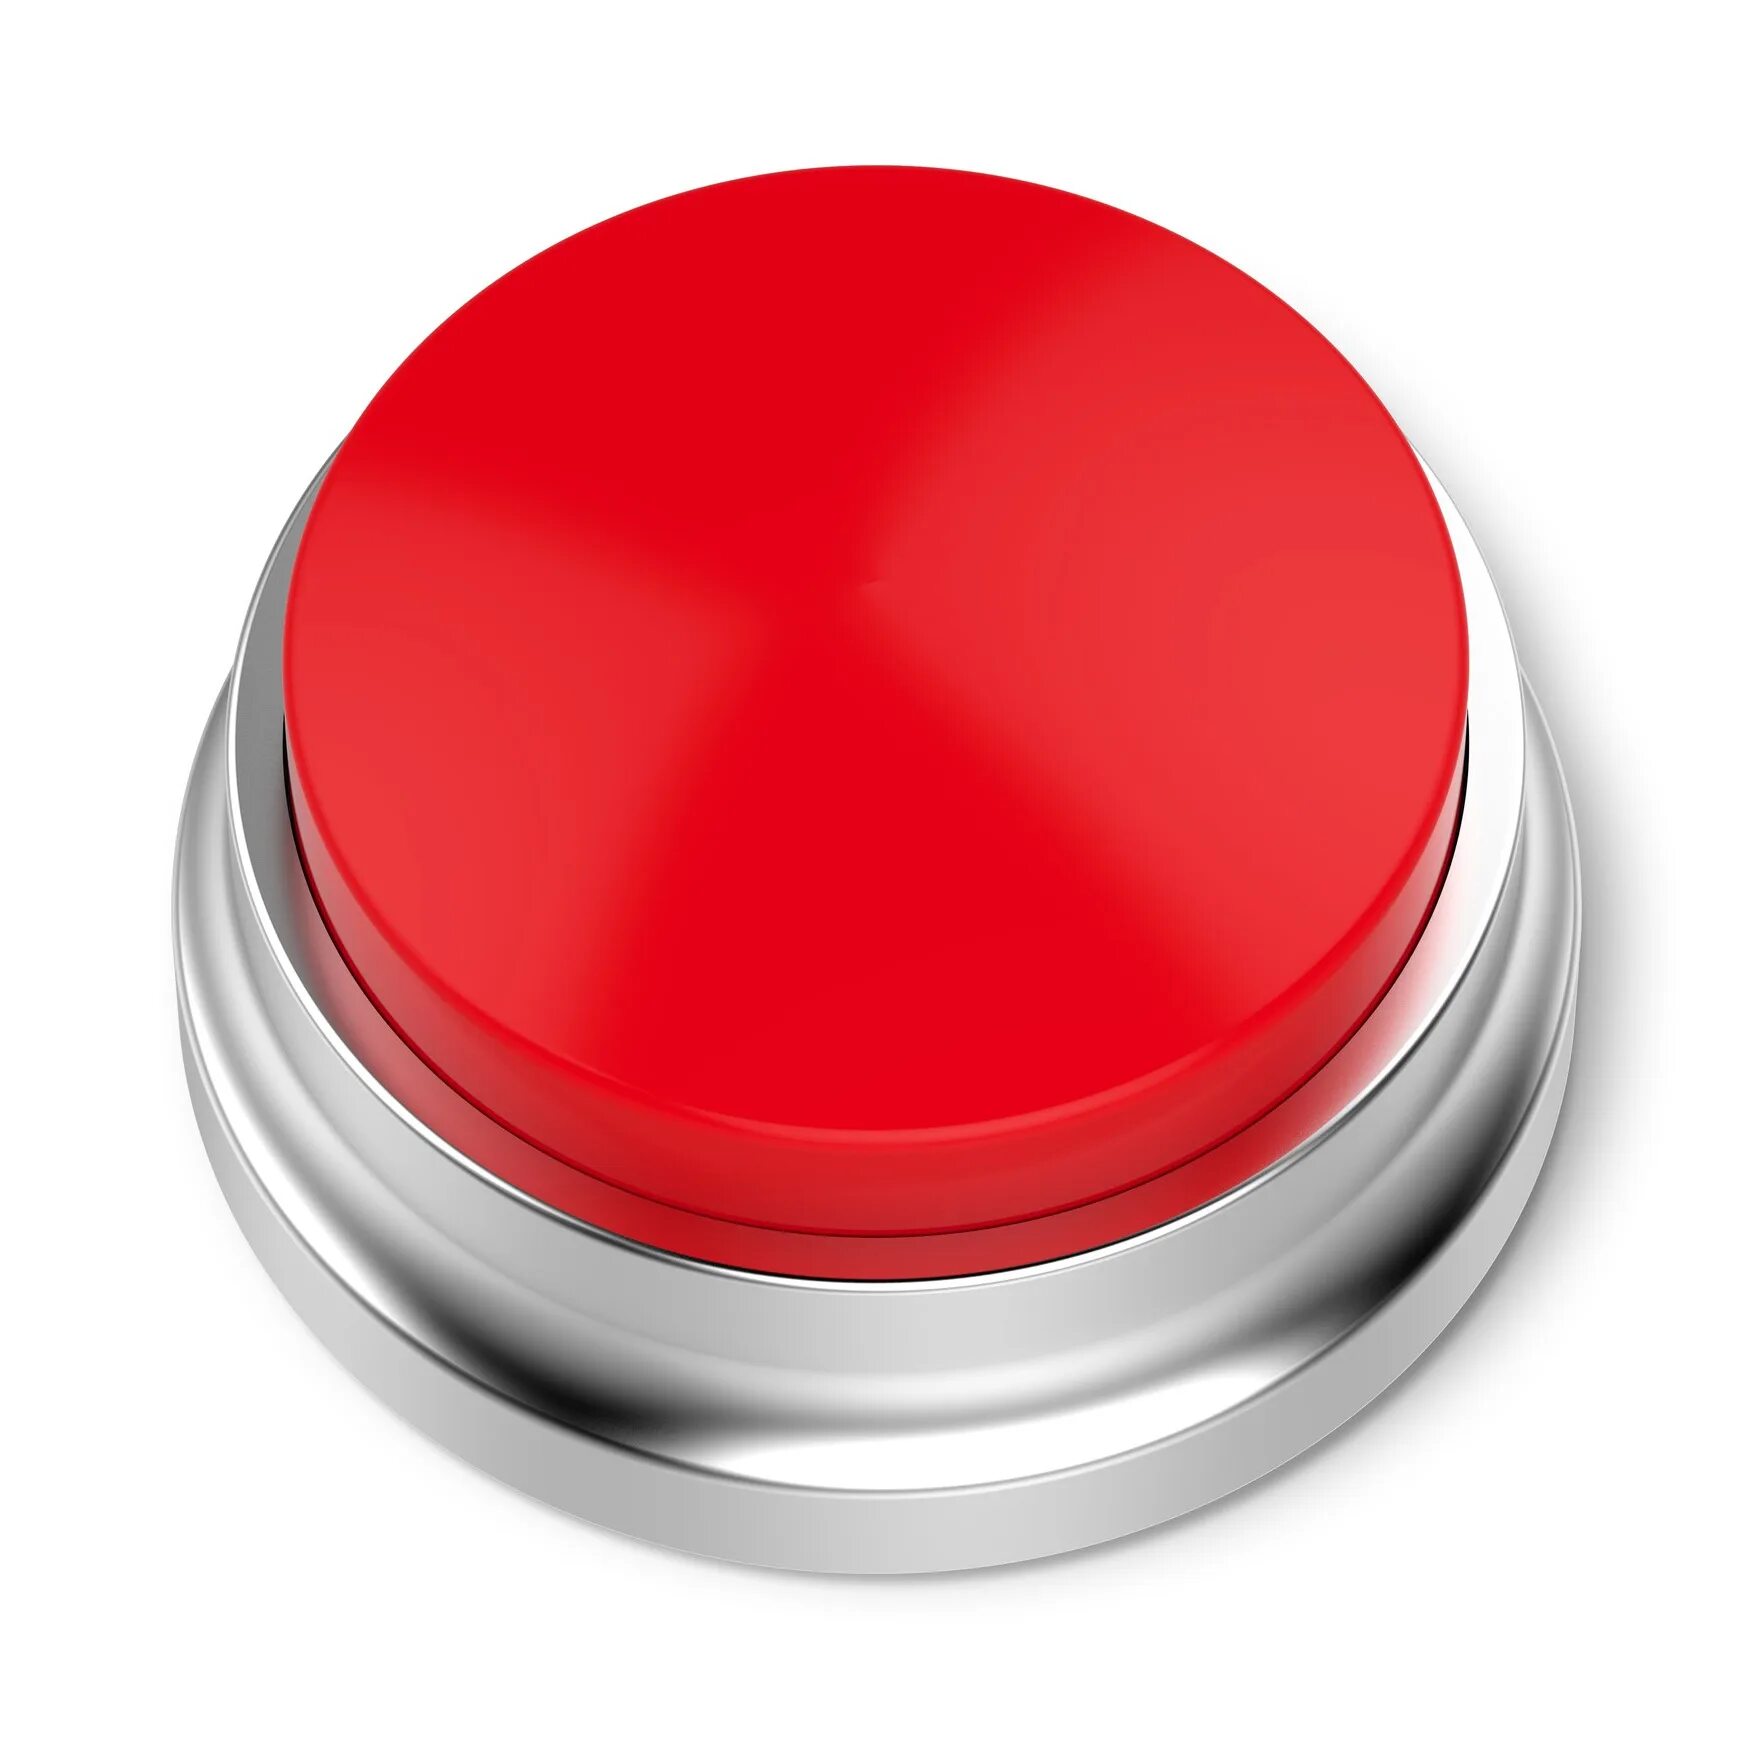 Картинки нажать кнопку. Красная кнопка амонг Ач. Кнопка. Красная кнопка без фона. Кнопки для сайта.